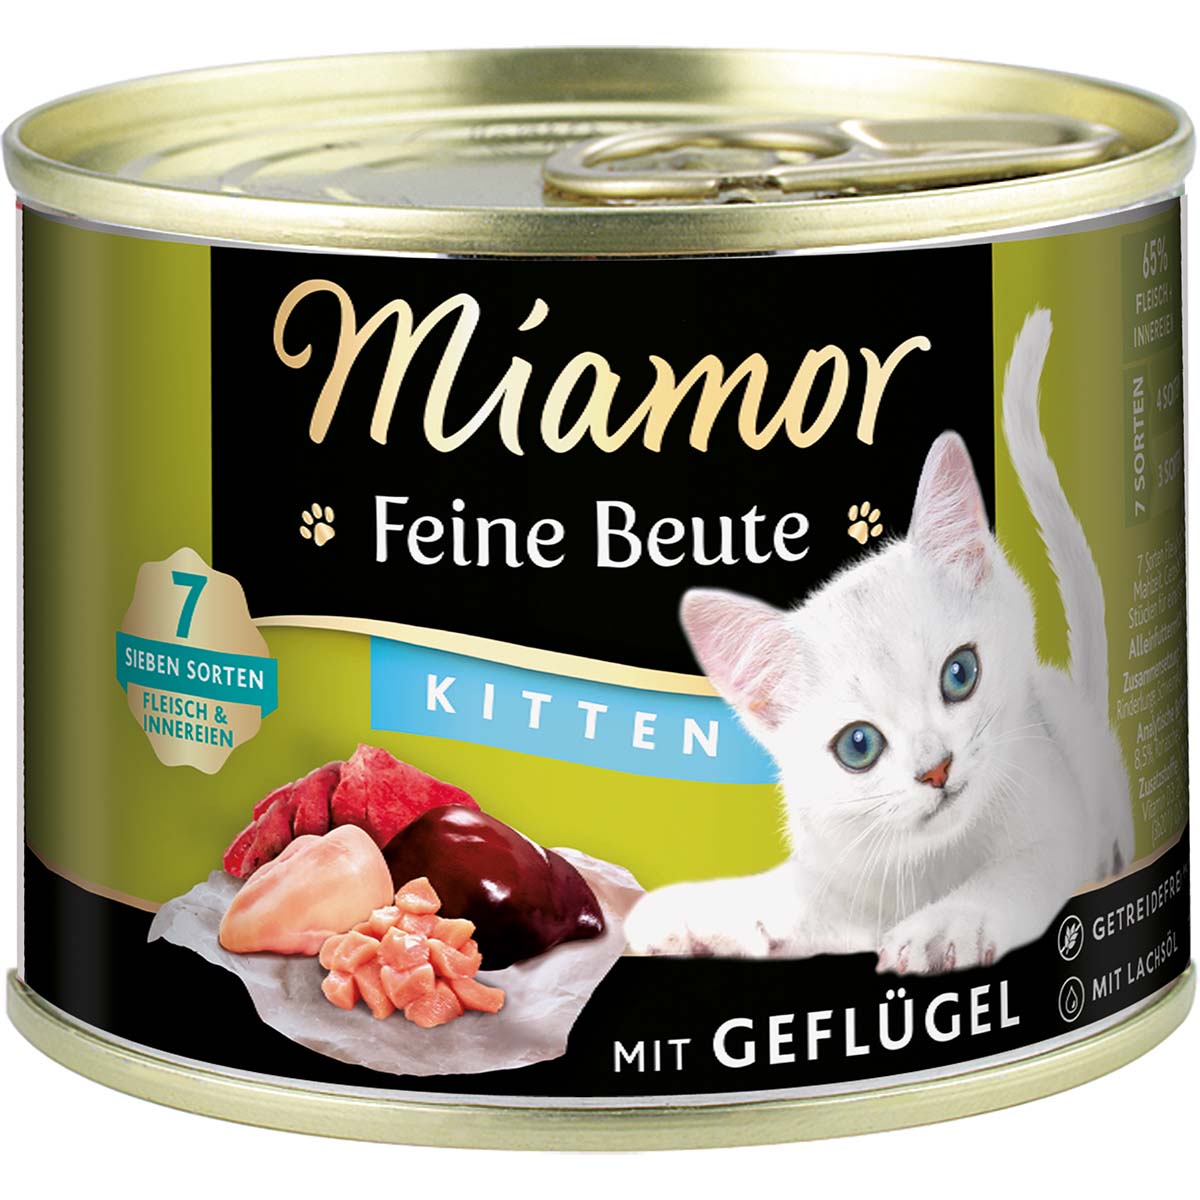 Miamor Feine Beute Kitten - Geflügel 12x185g von Miamor